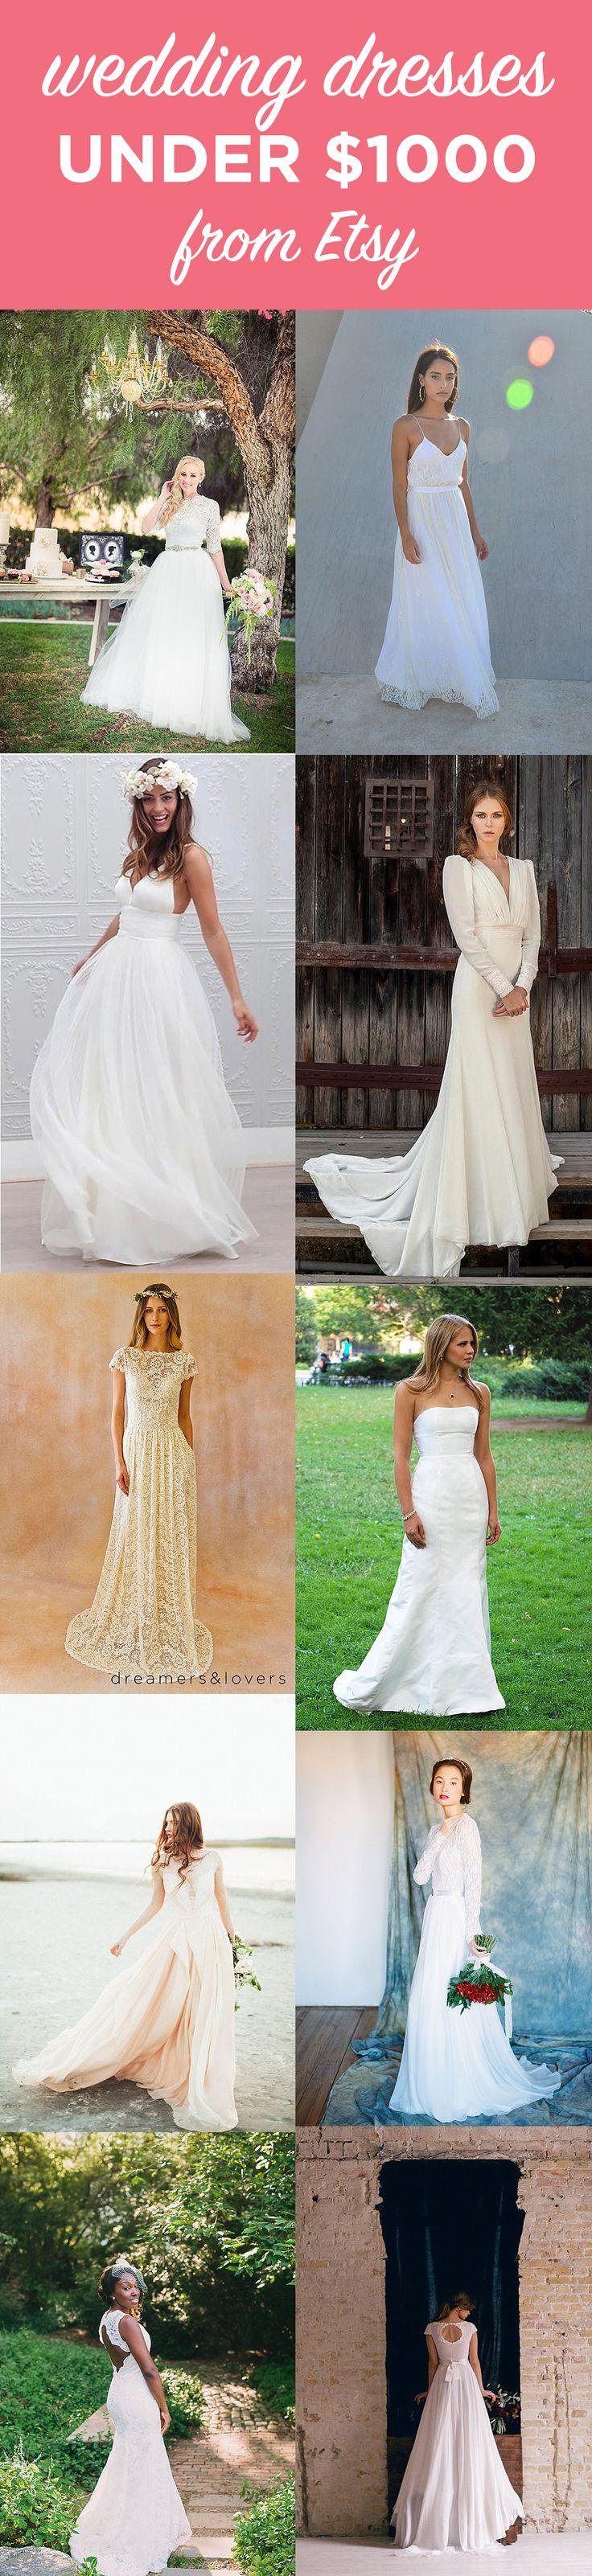 زفاف - 10 Gorgeous Wedding Gowns Under $1000 From Etsy